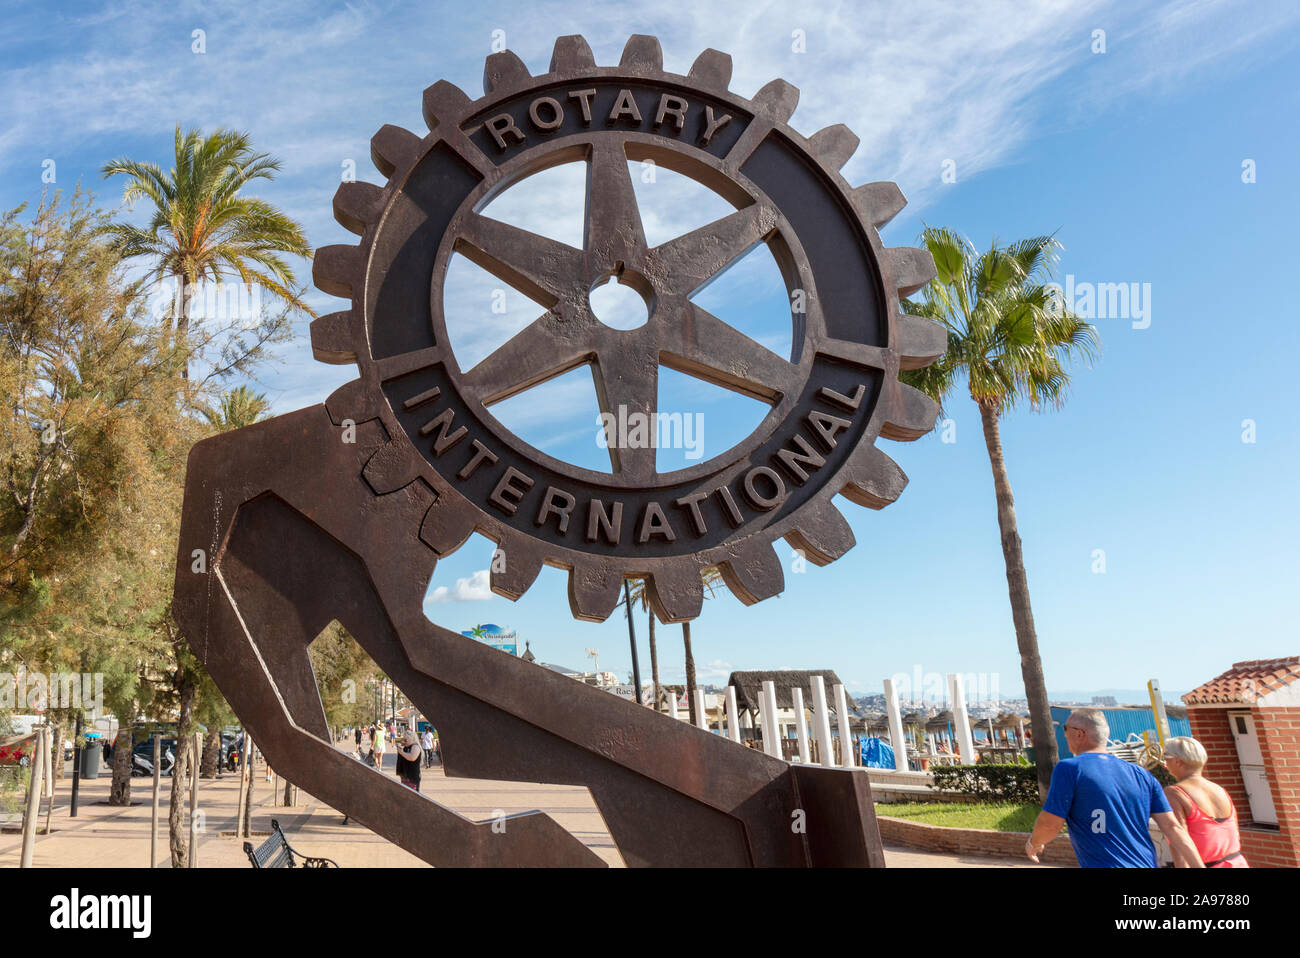 Il Rotary International monumento sulla promenade, Fuengirola, Costa del Sol, provincia di Malaga, Spagna. Una ruota è stata il simbolo del Rotary sin dal 1905. Per Foto Stock